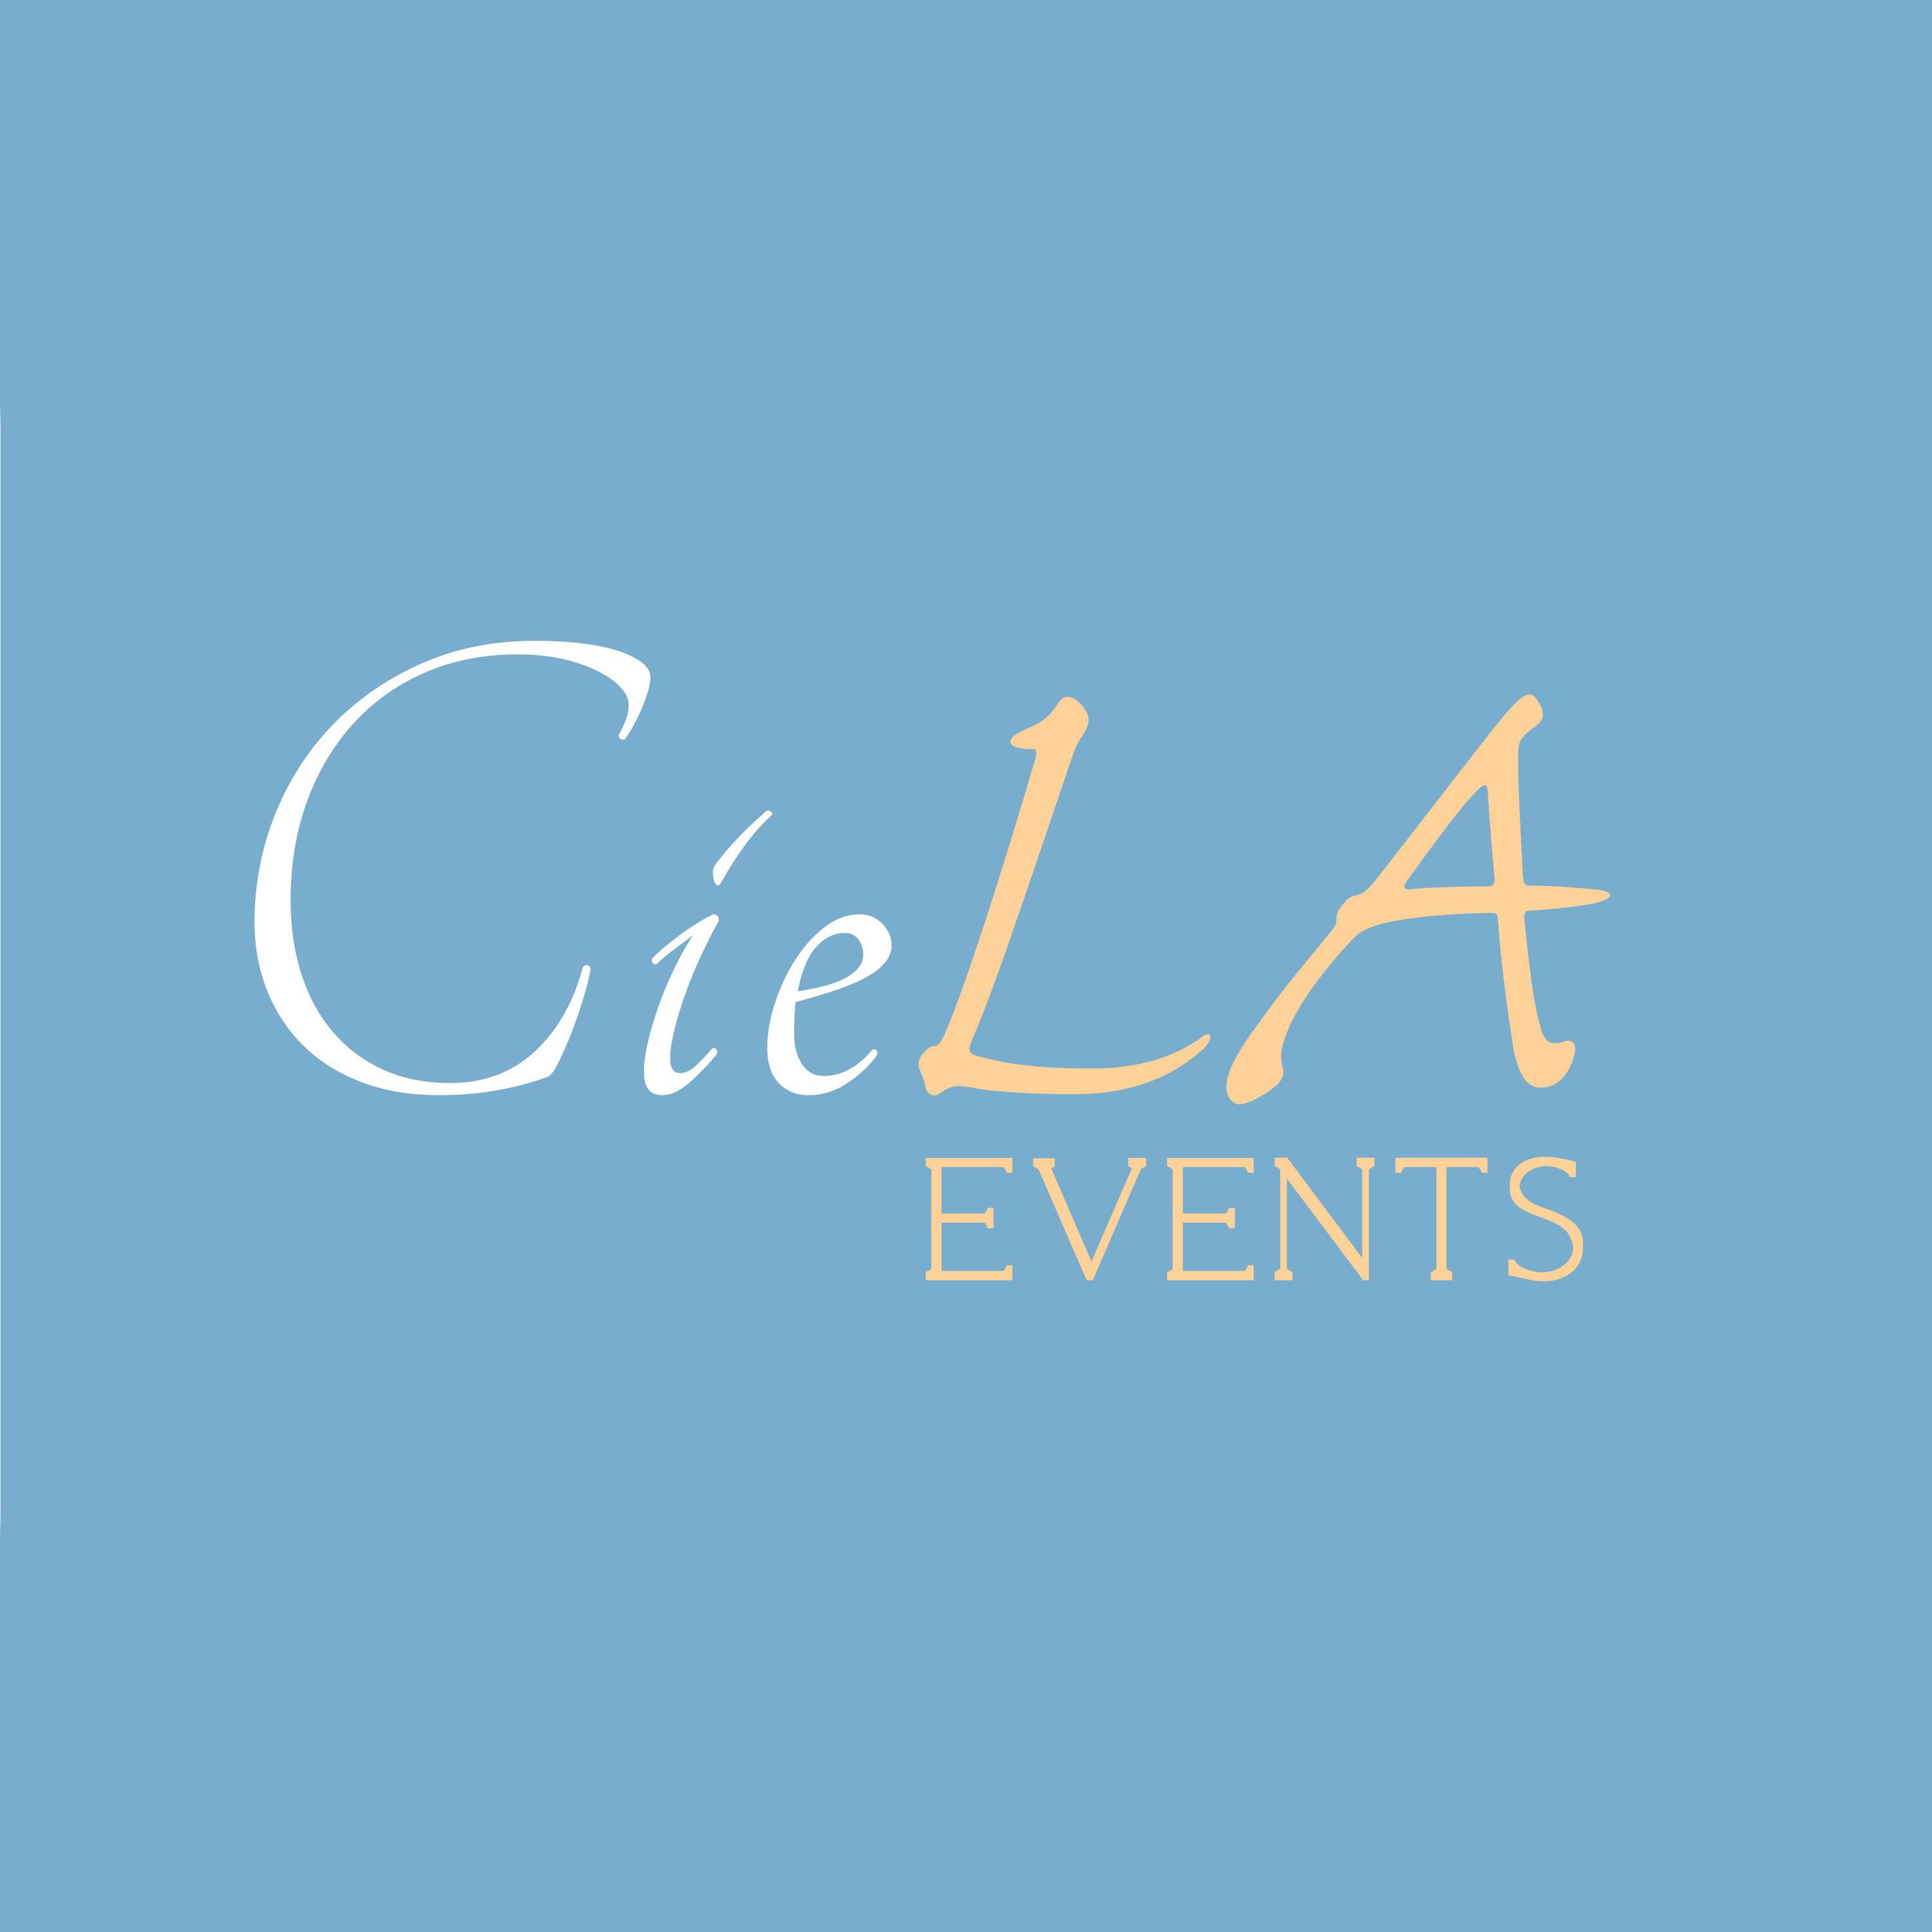 CieLA Events